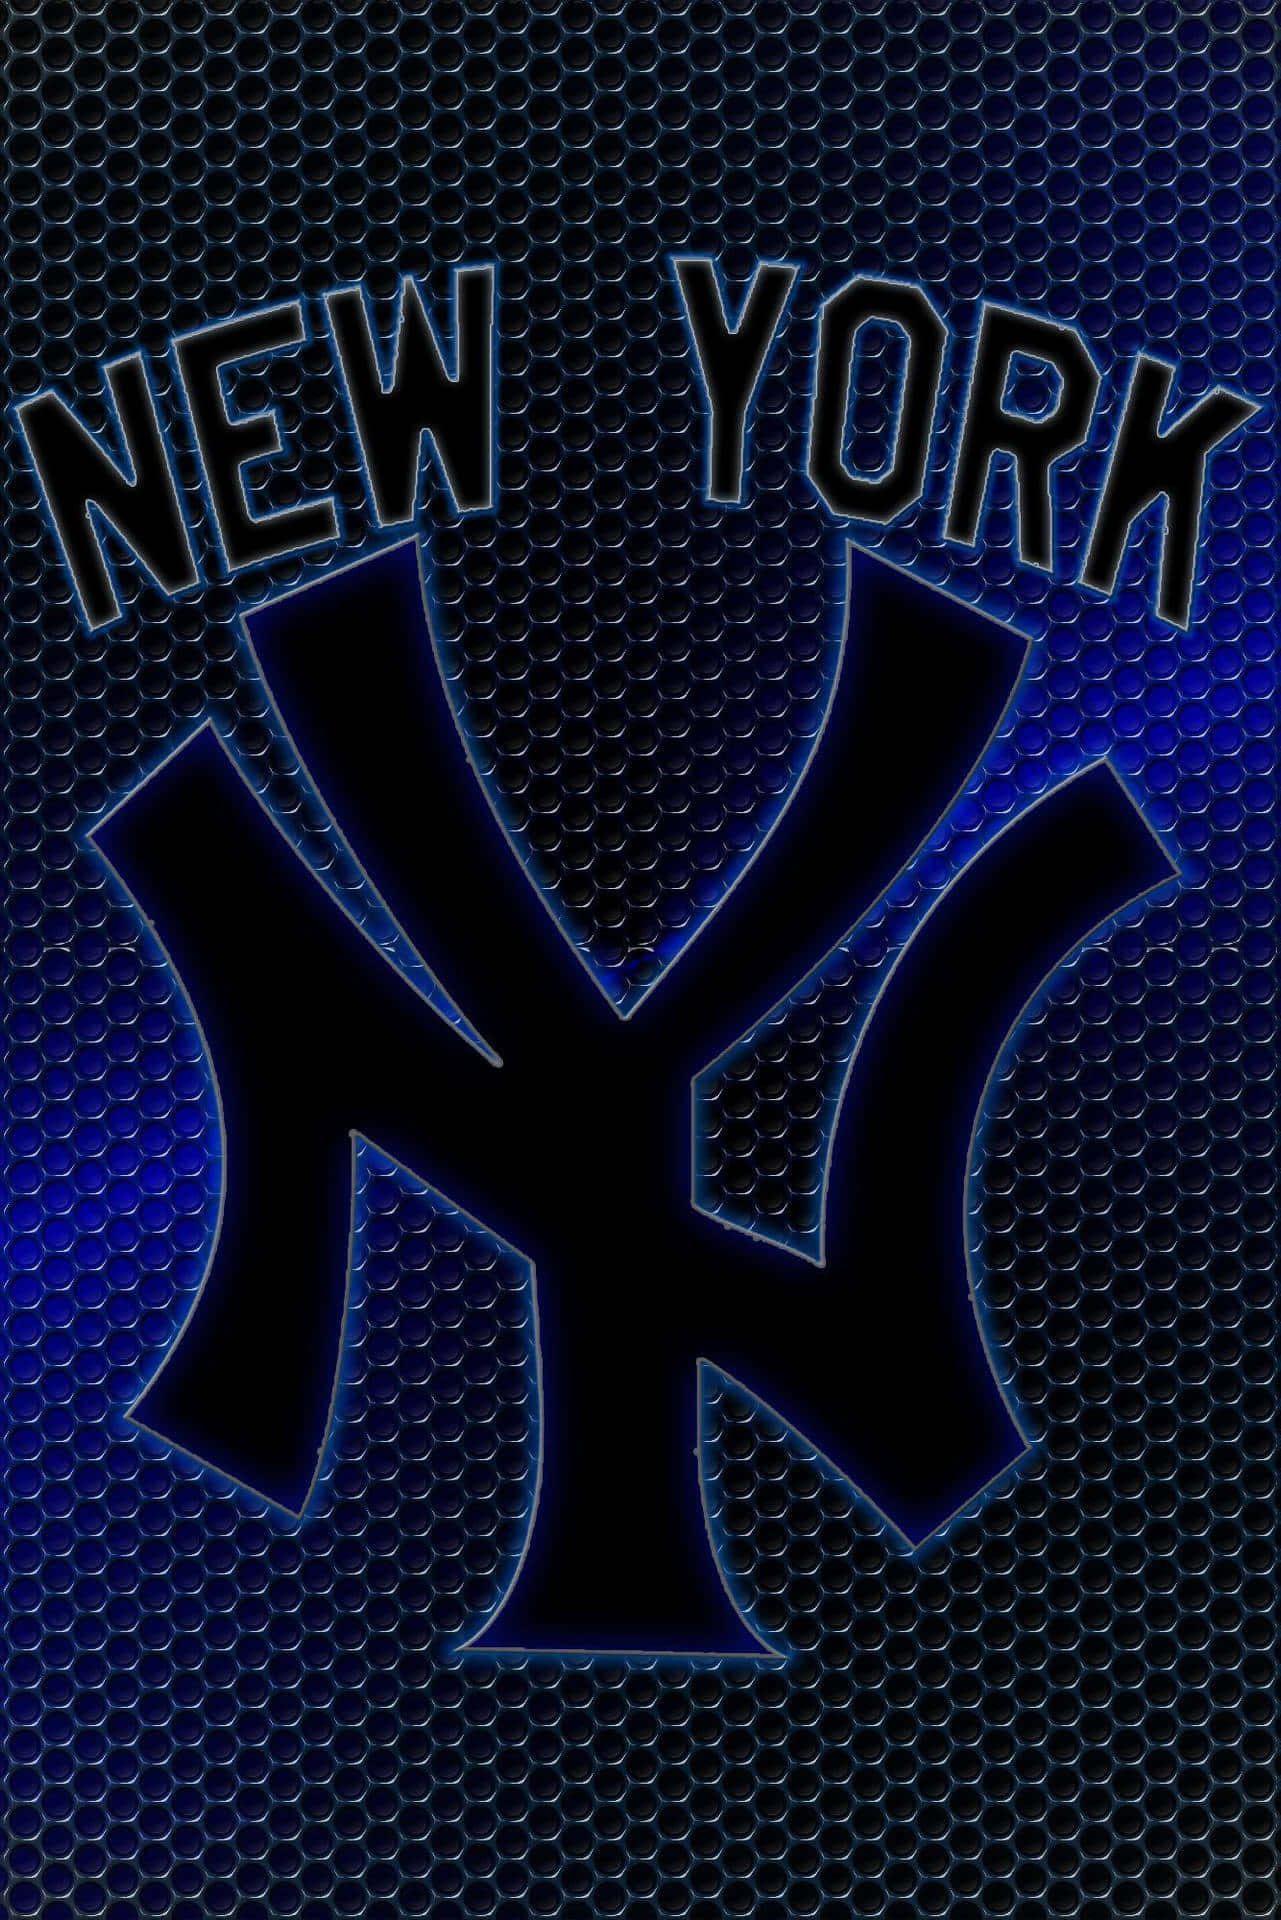 Papel De Parede Escuro Com O New York Yankees Para Iphone. Papel de Parede